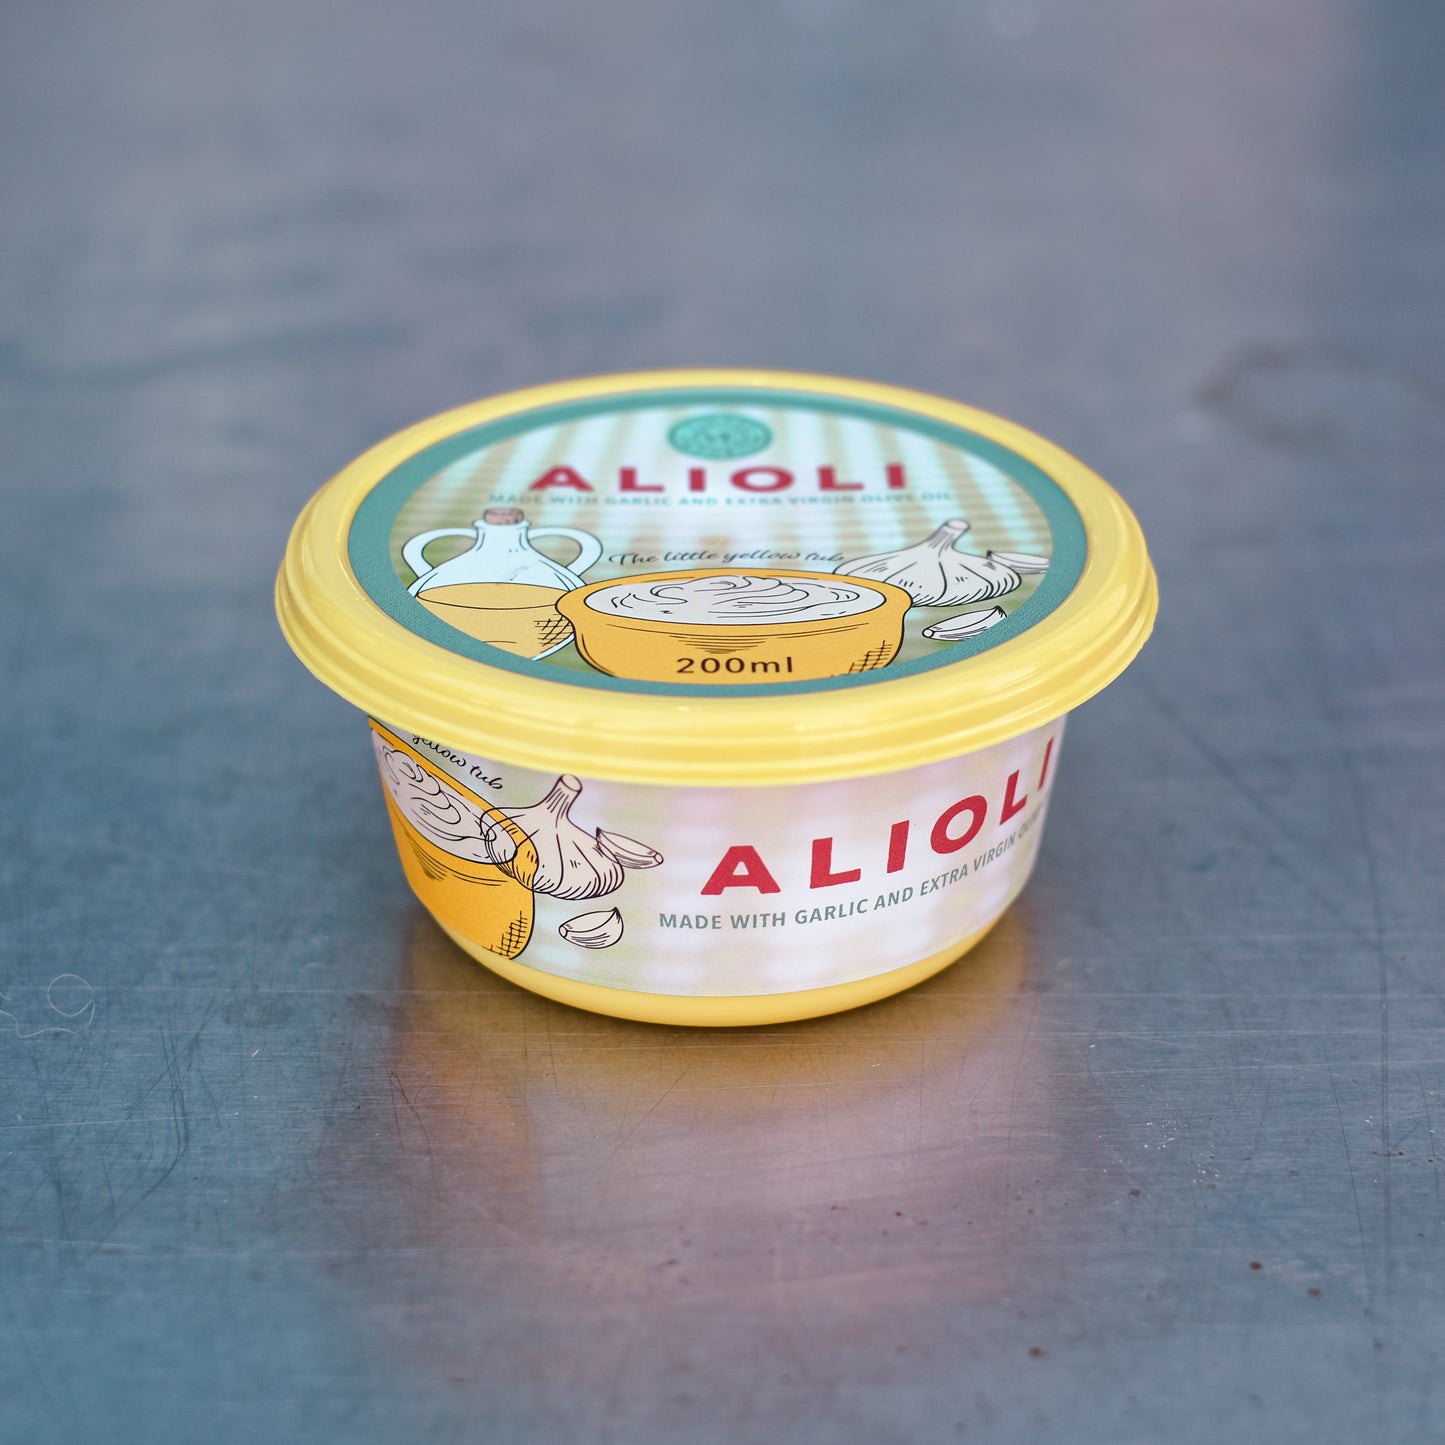 Alioli - Authentic Spanish